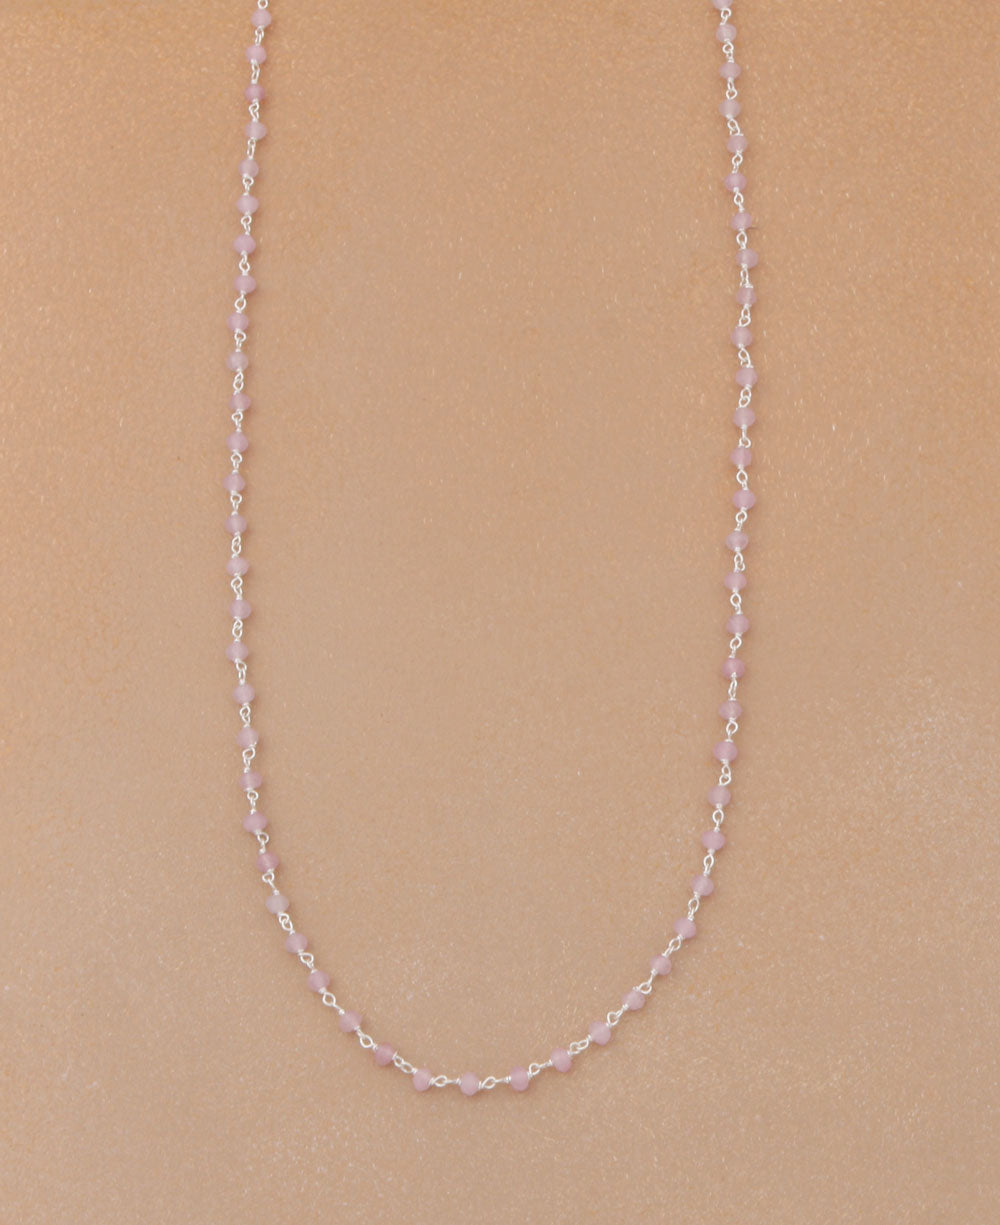 Gemstone Necklace Chain